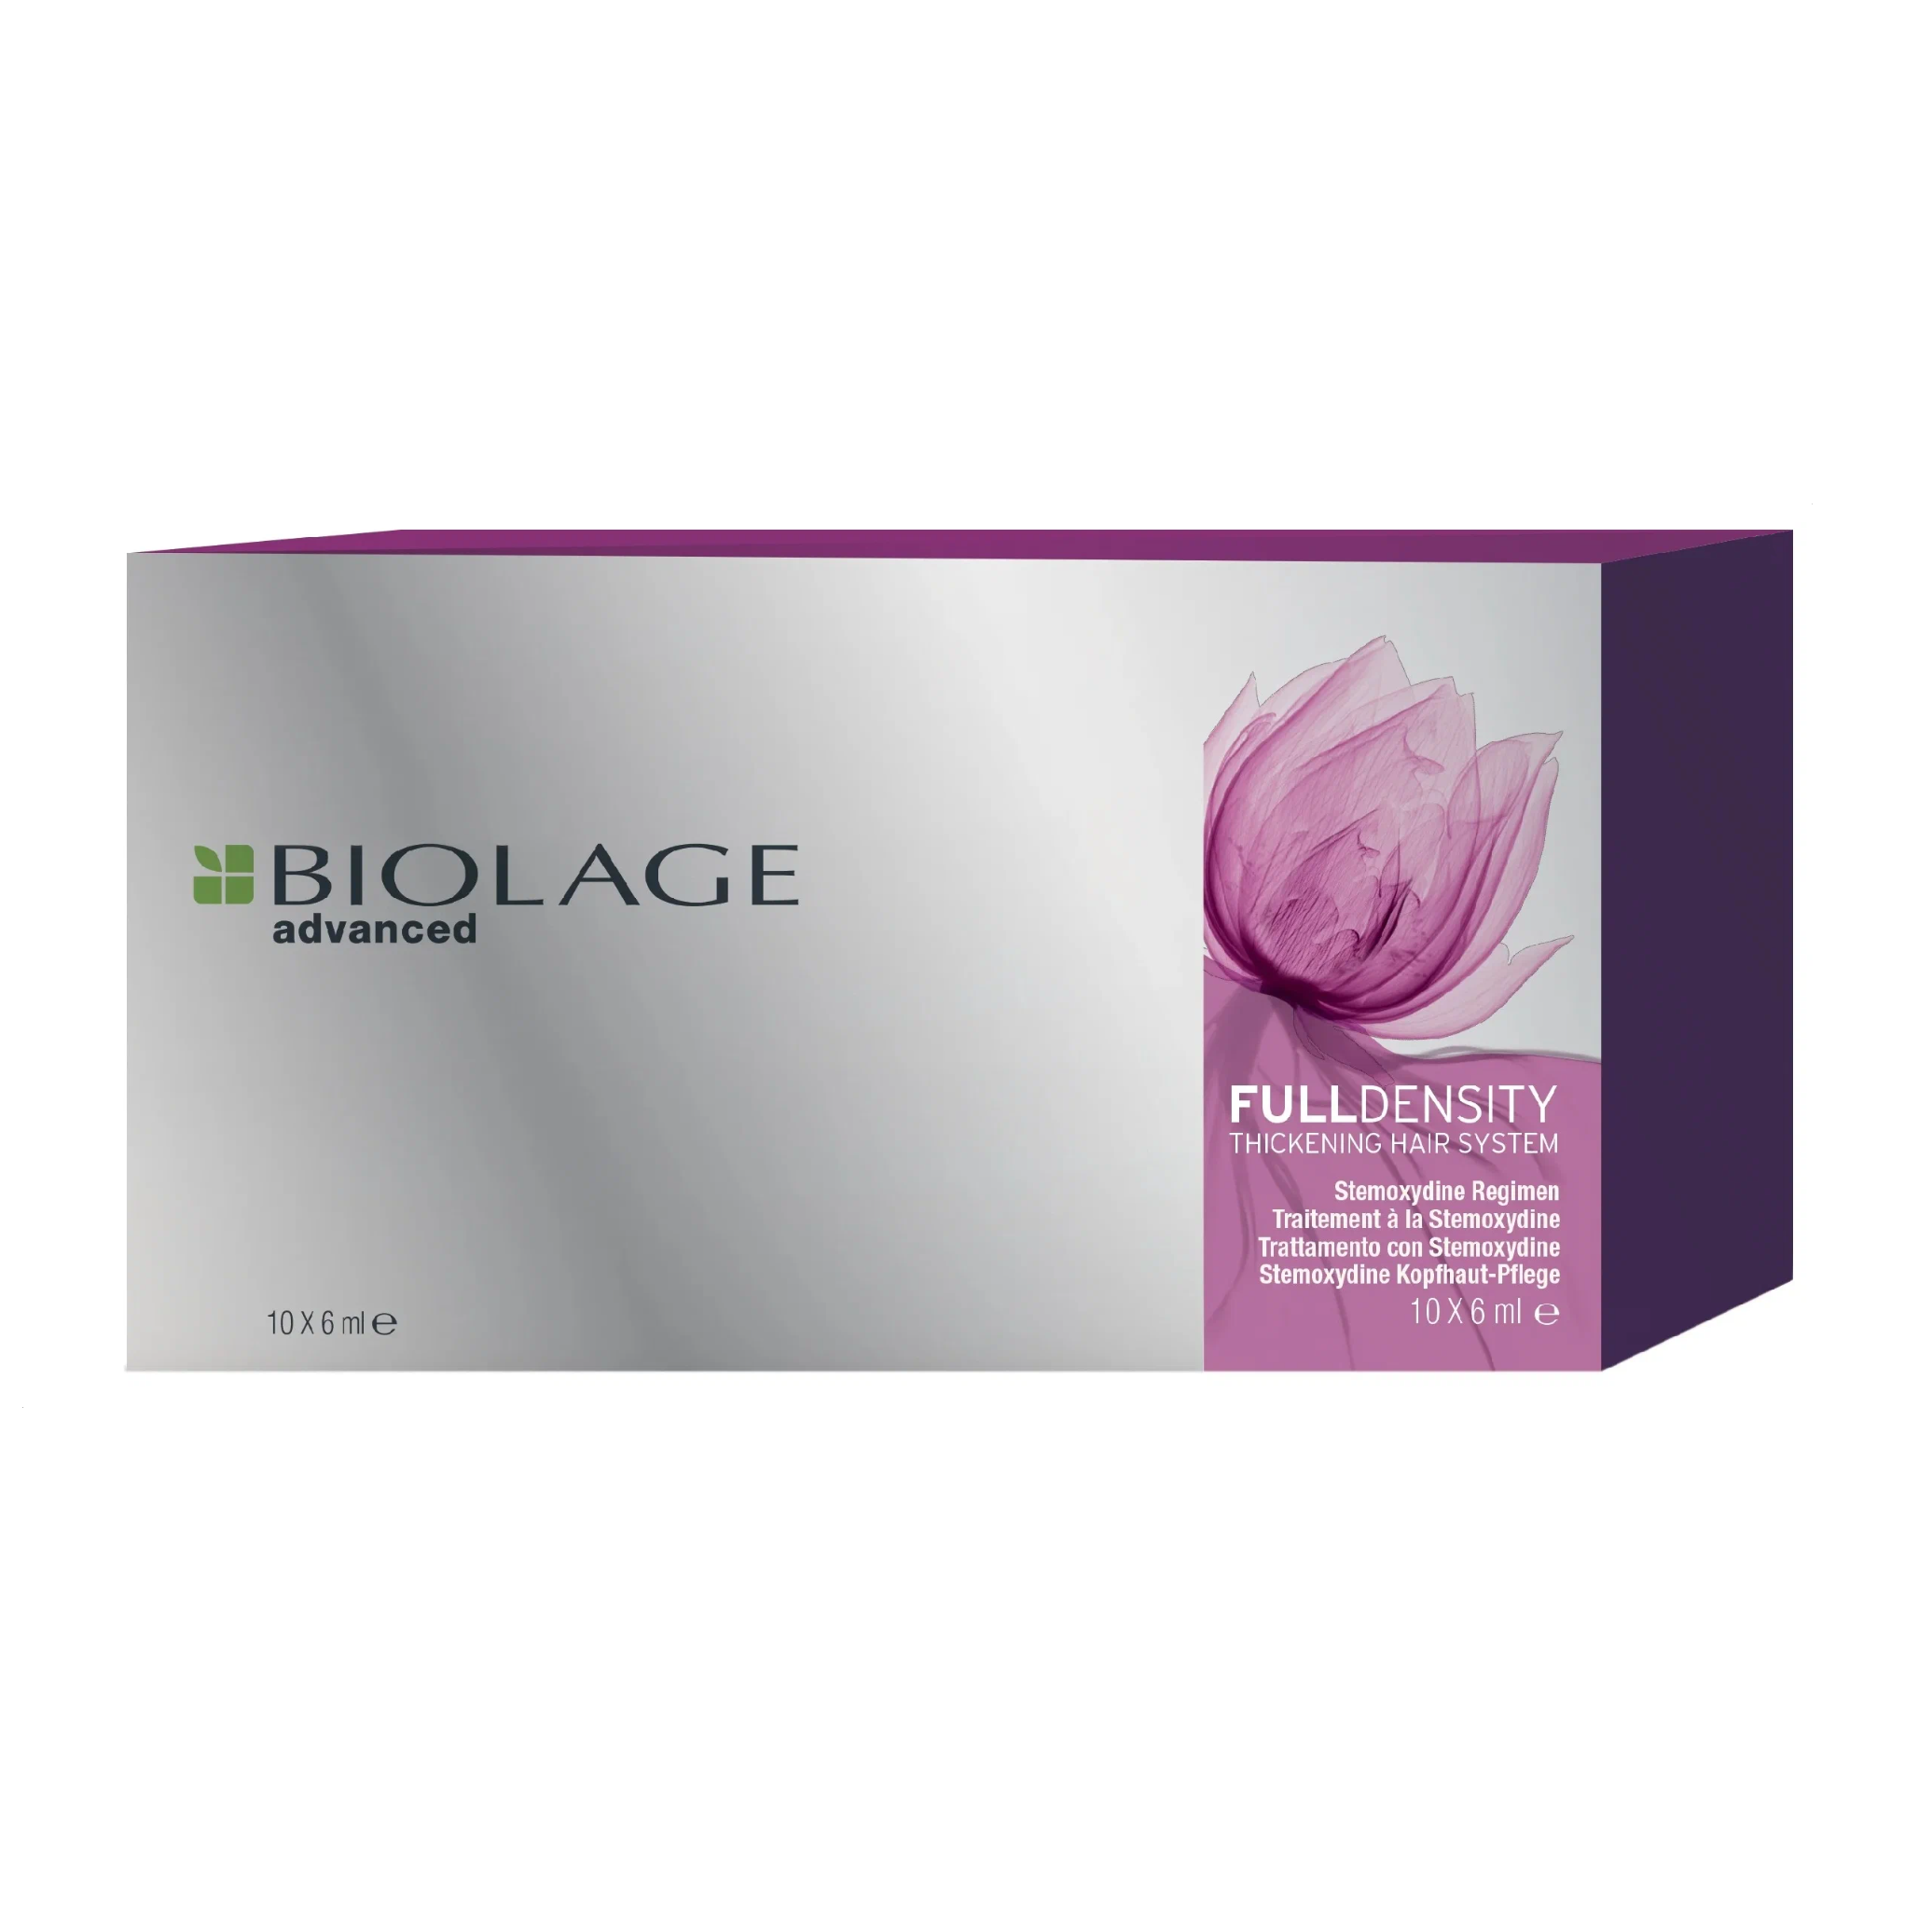 Глубокий тоник-уход со стемоксидином, комплекс для уплотнения волос Biolage FullDensity, 10 х 6 мл. 